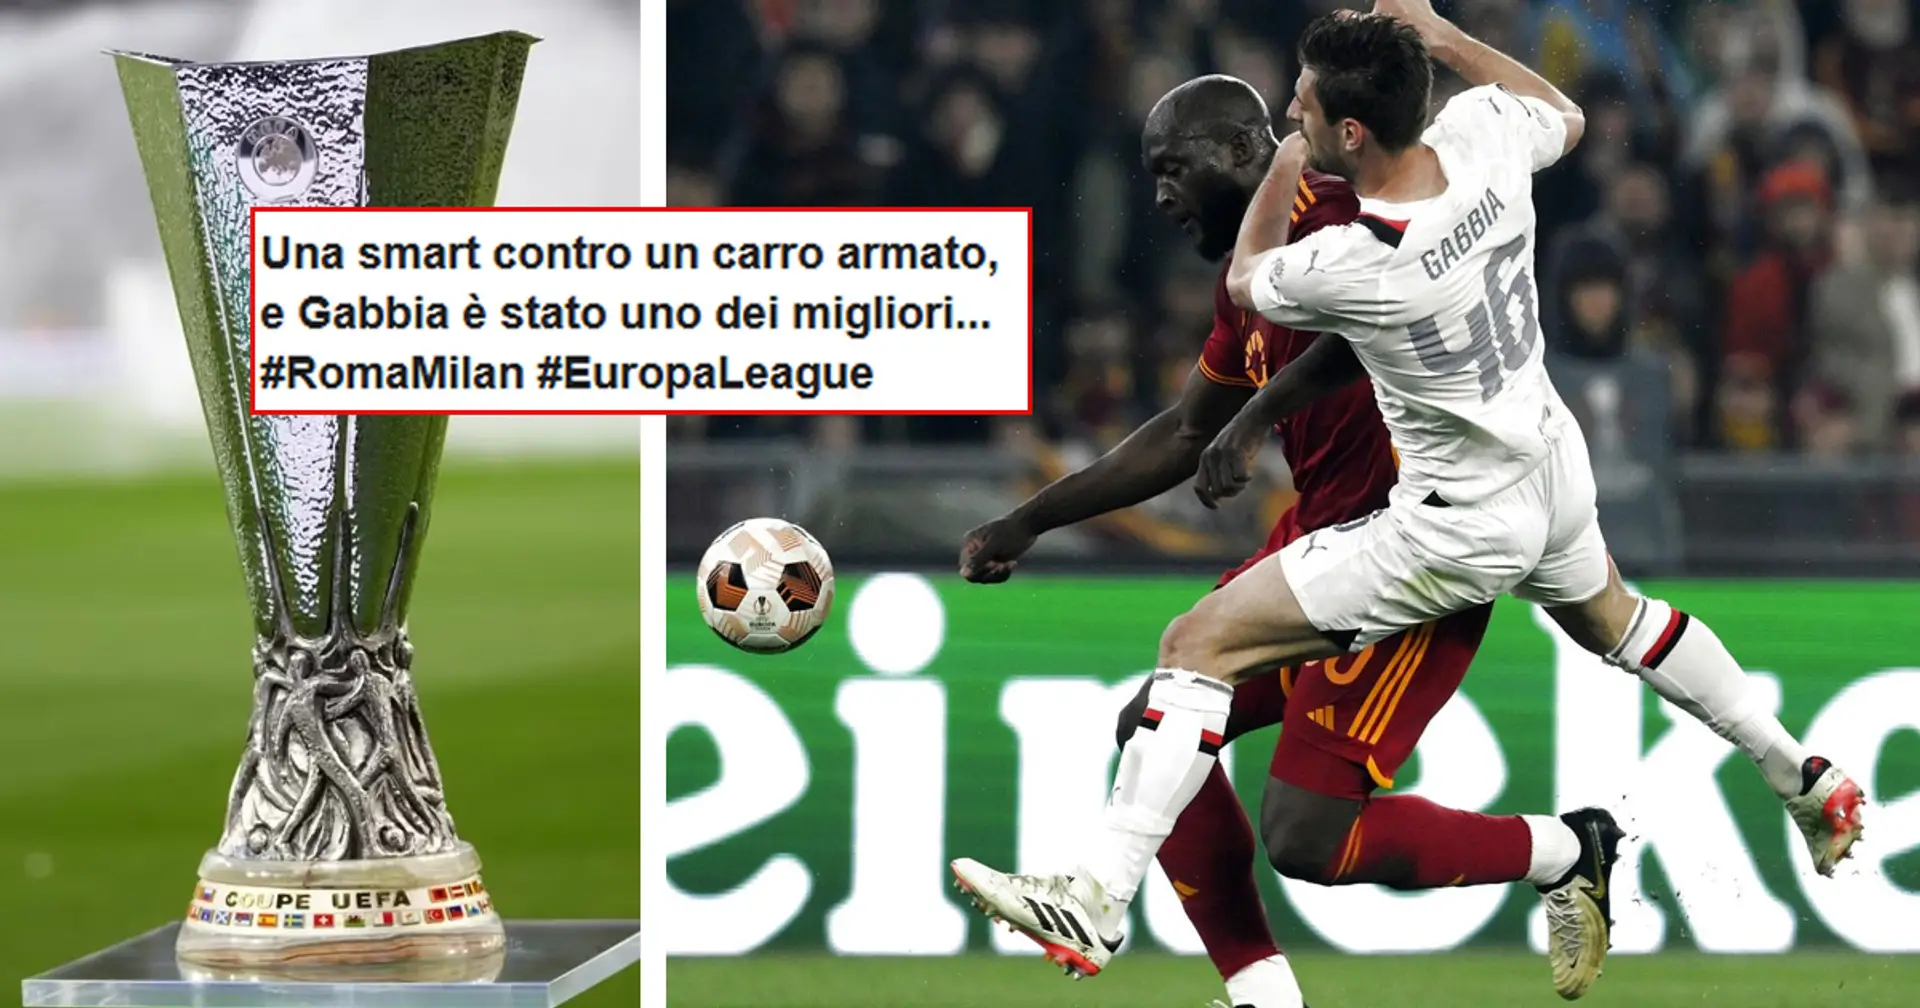 Gabbia inerme su Lukaku nel 2° gol di Roma-Milan, la reazione dei tifosi sui social: "Ha preso il muro, fratellì!"